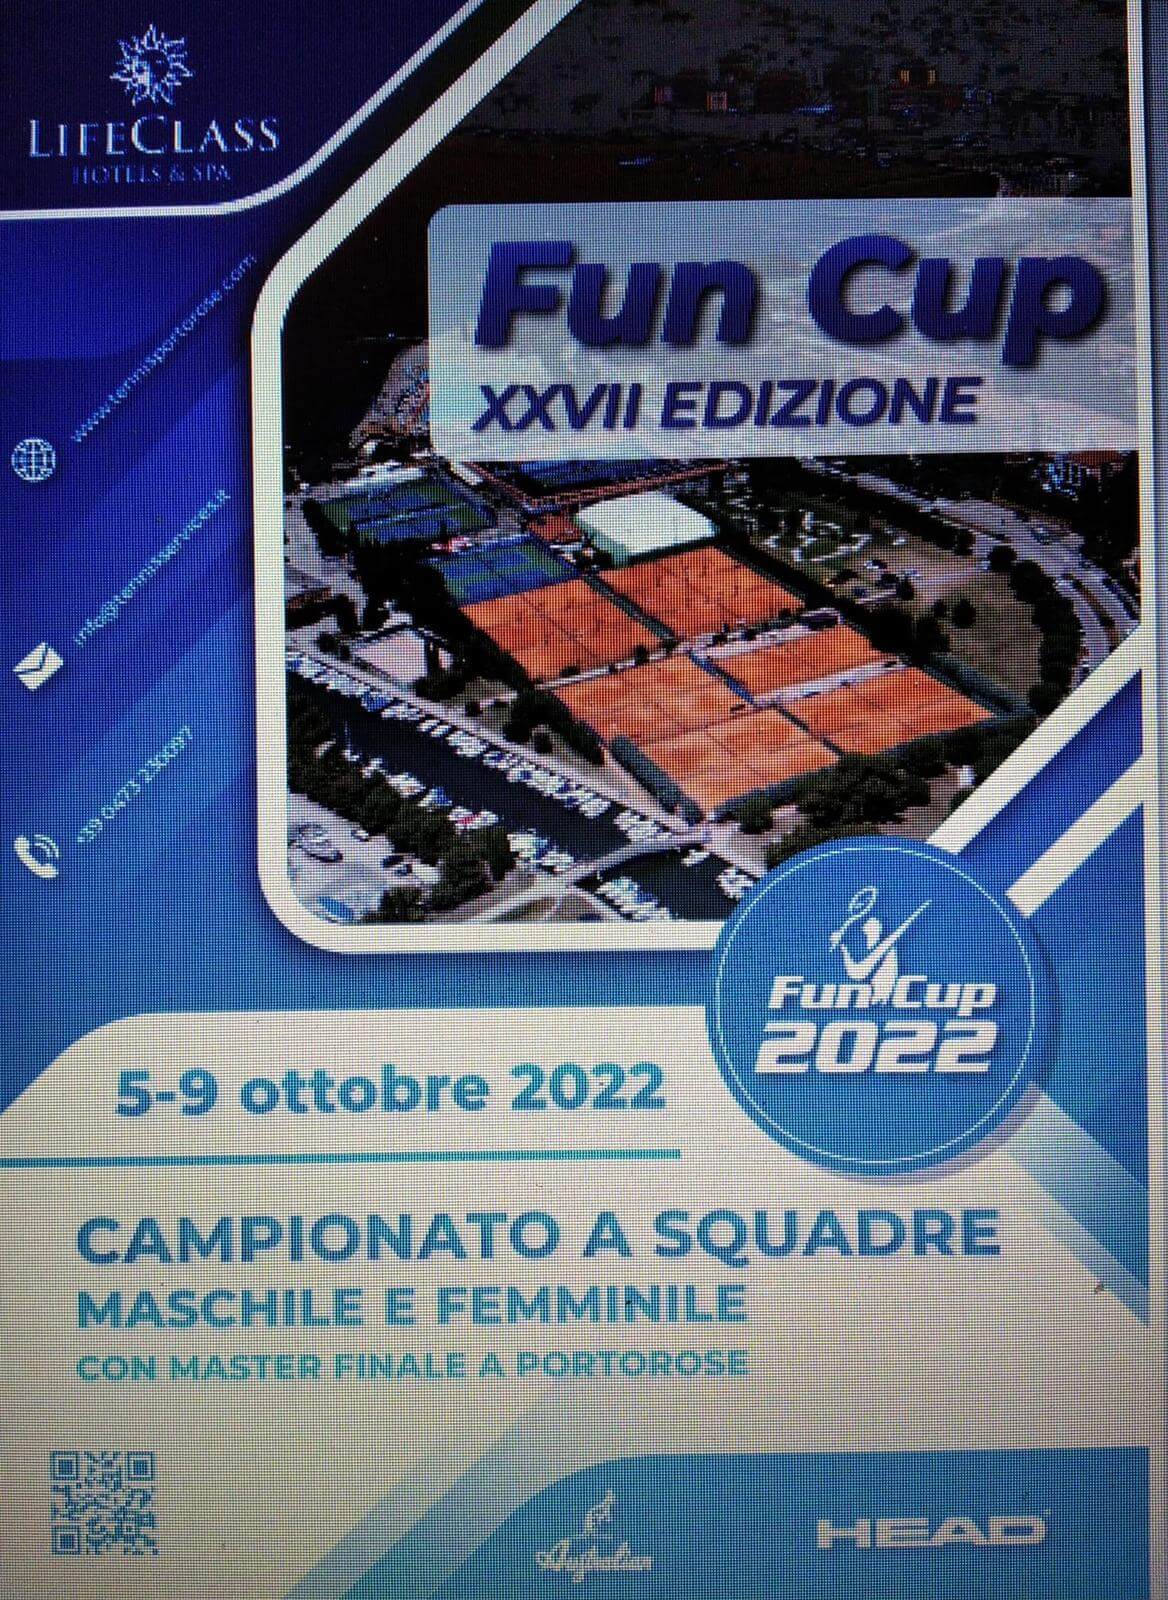 Fun Cup 2022